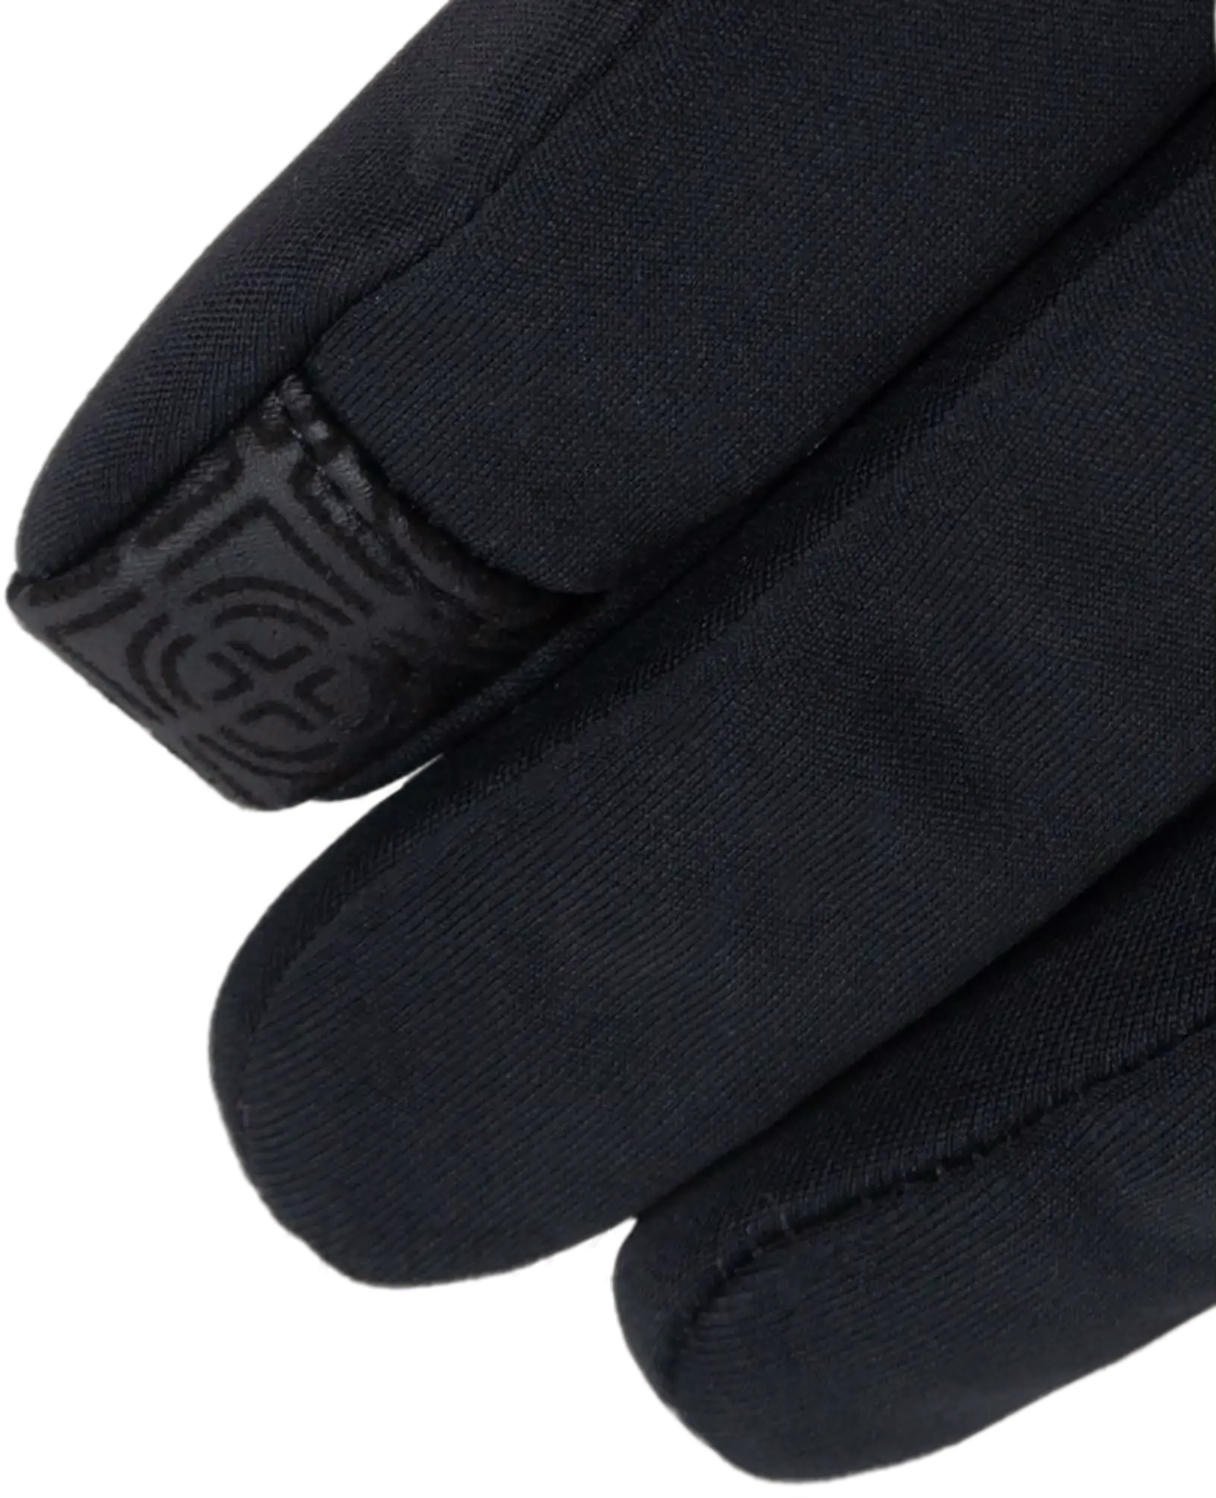 Перчатки Trekmates Rigg Glove TM-006312 black - XXL - черный фото 3